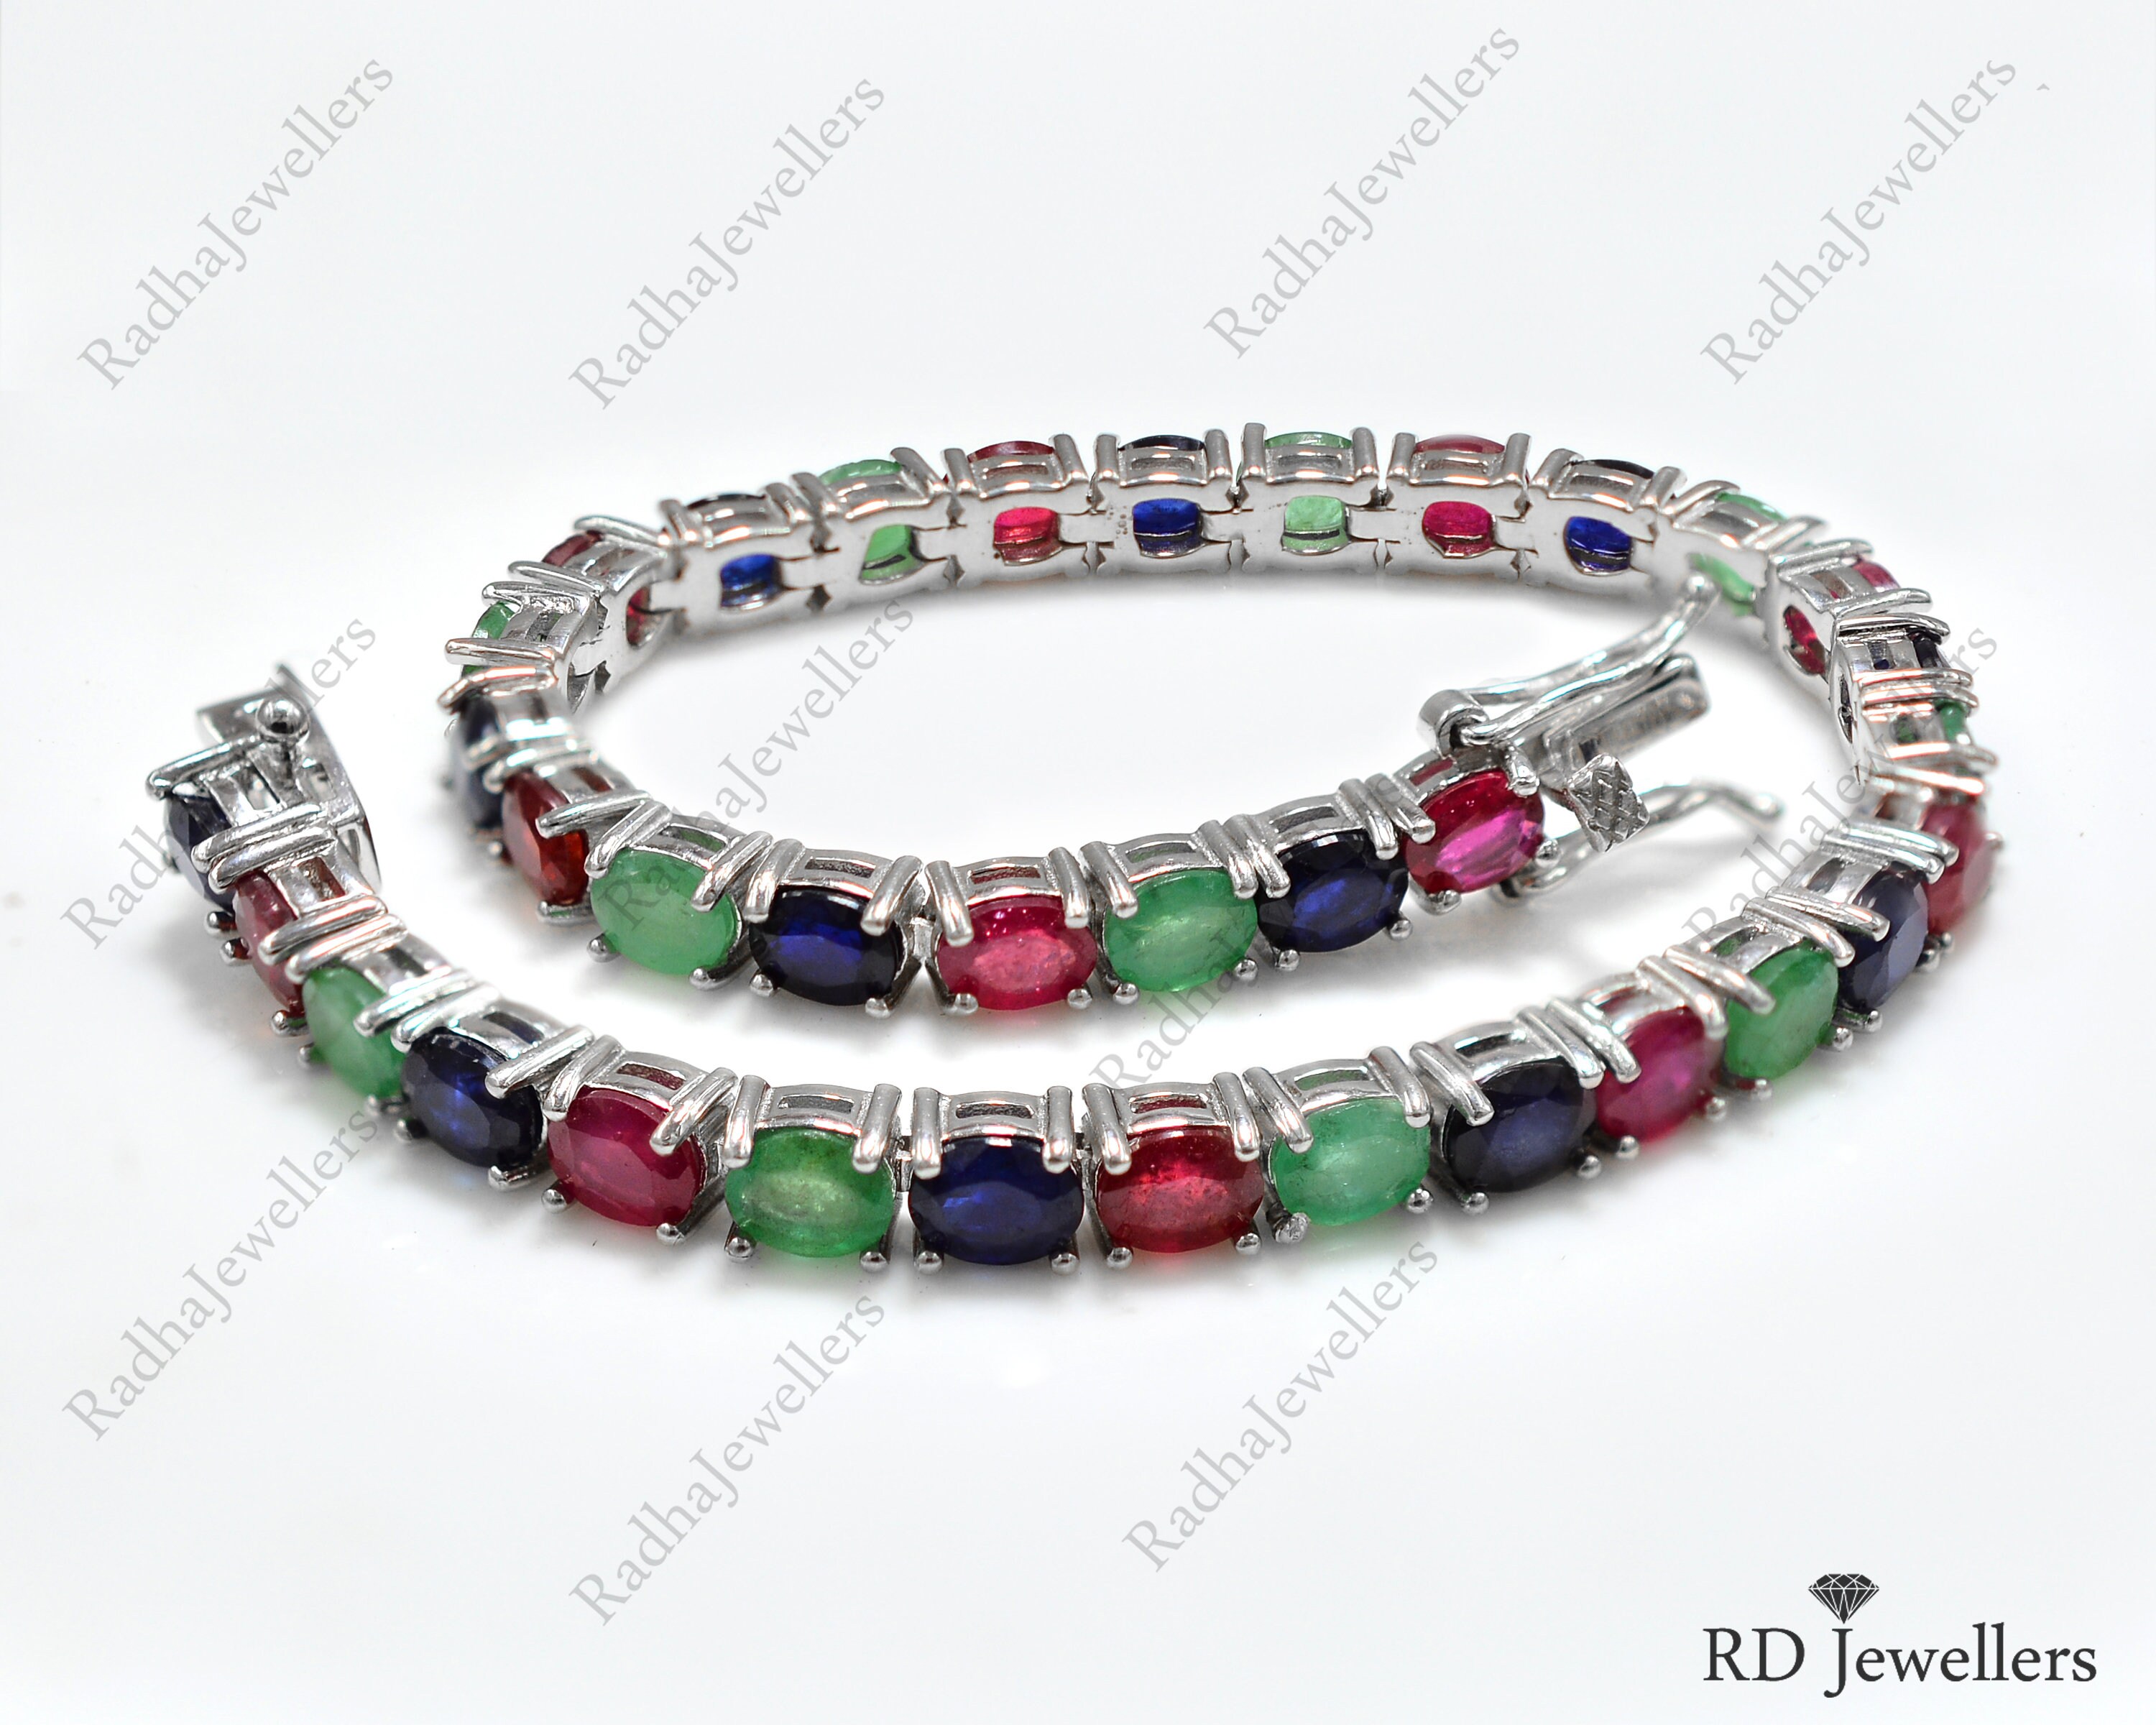 Navratna Stone Bracelet | Kabras' Jewels